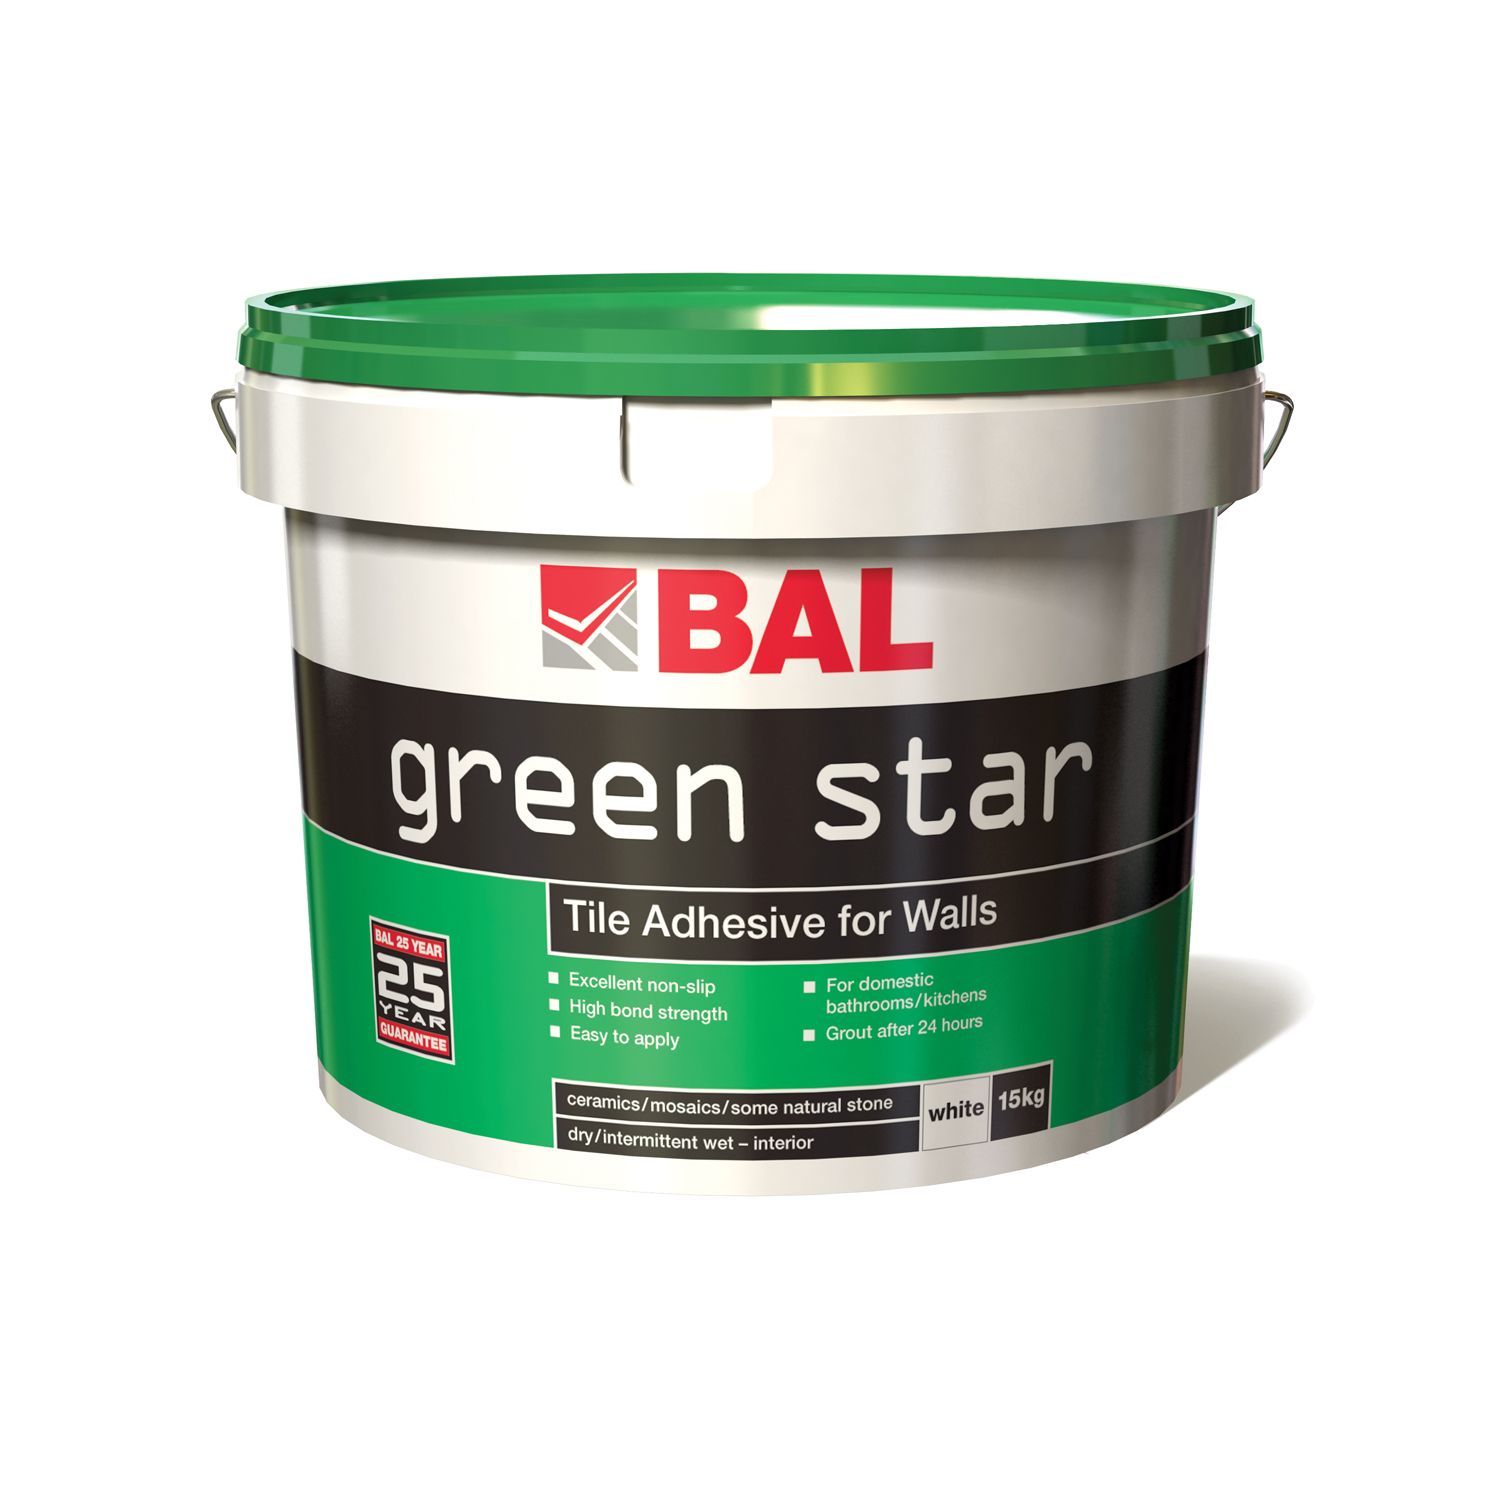 Bal Green Star Ready Mixed Wall Adhesive 15kg